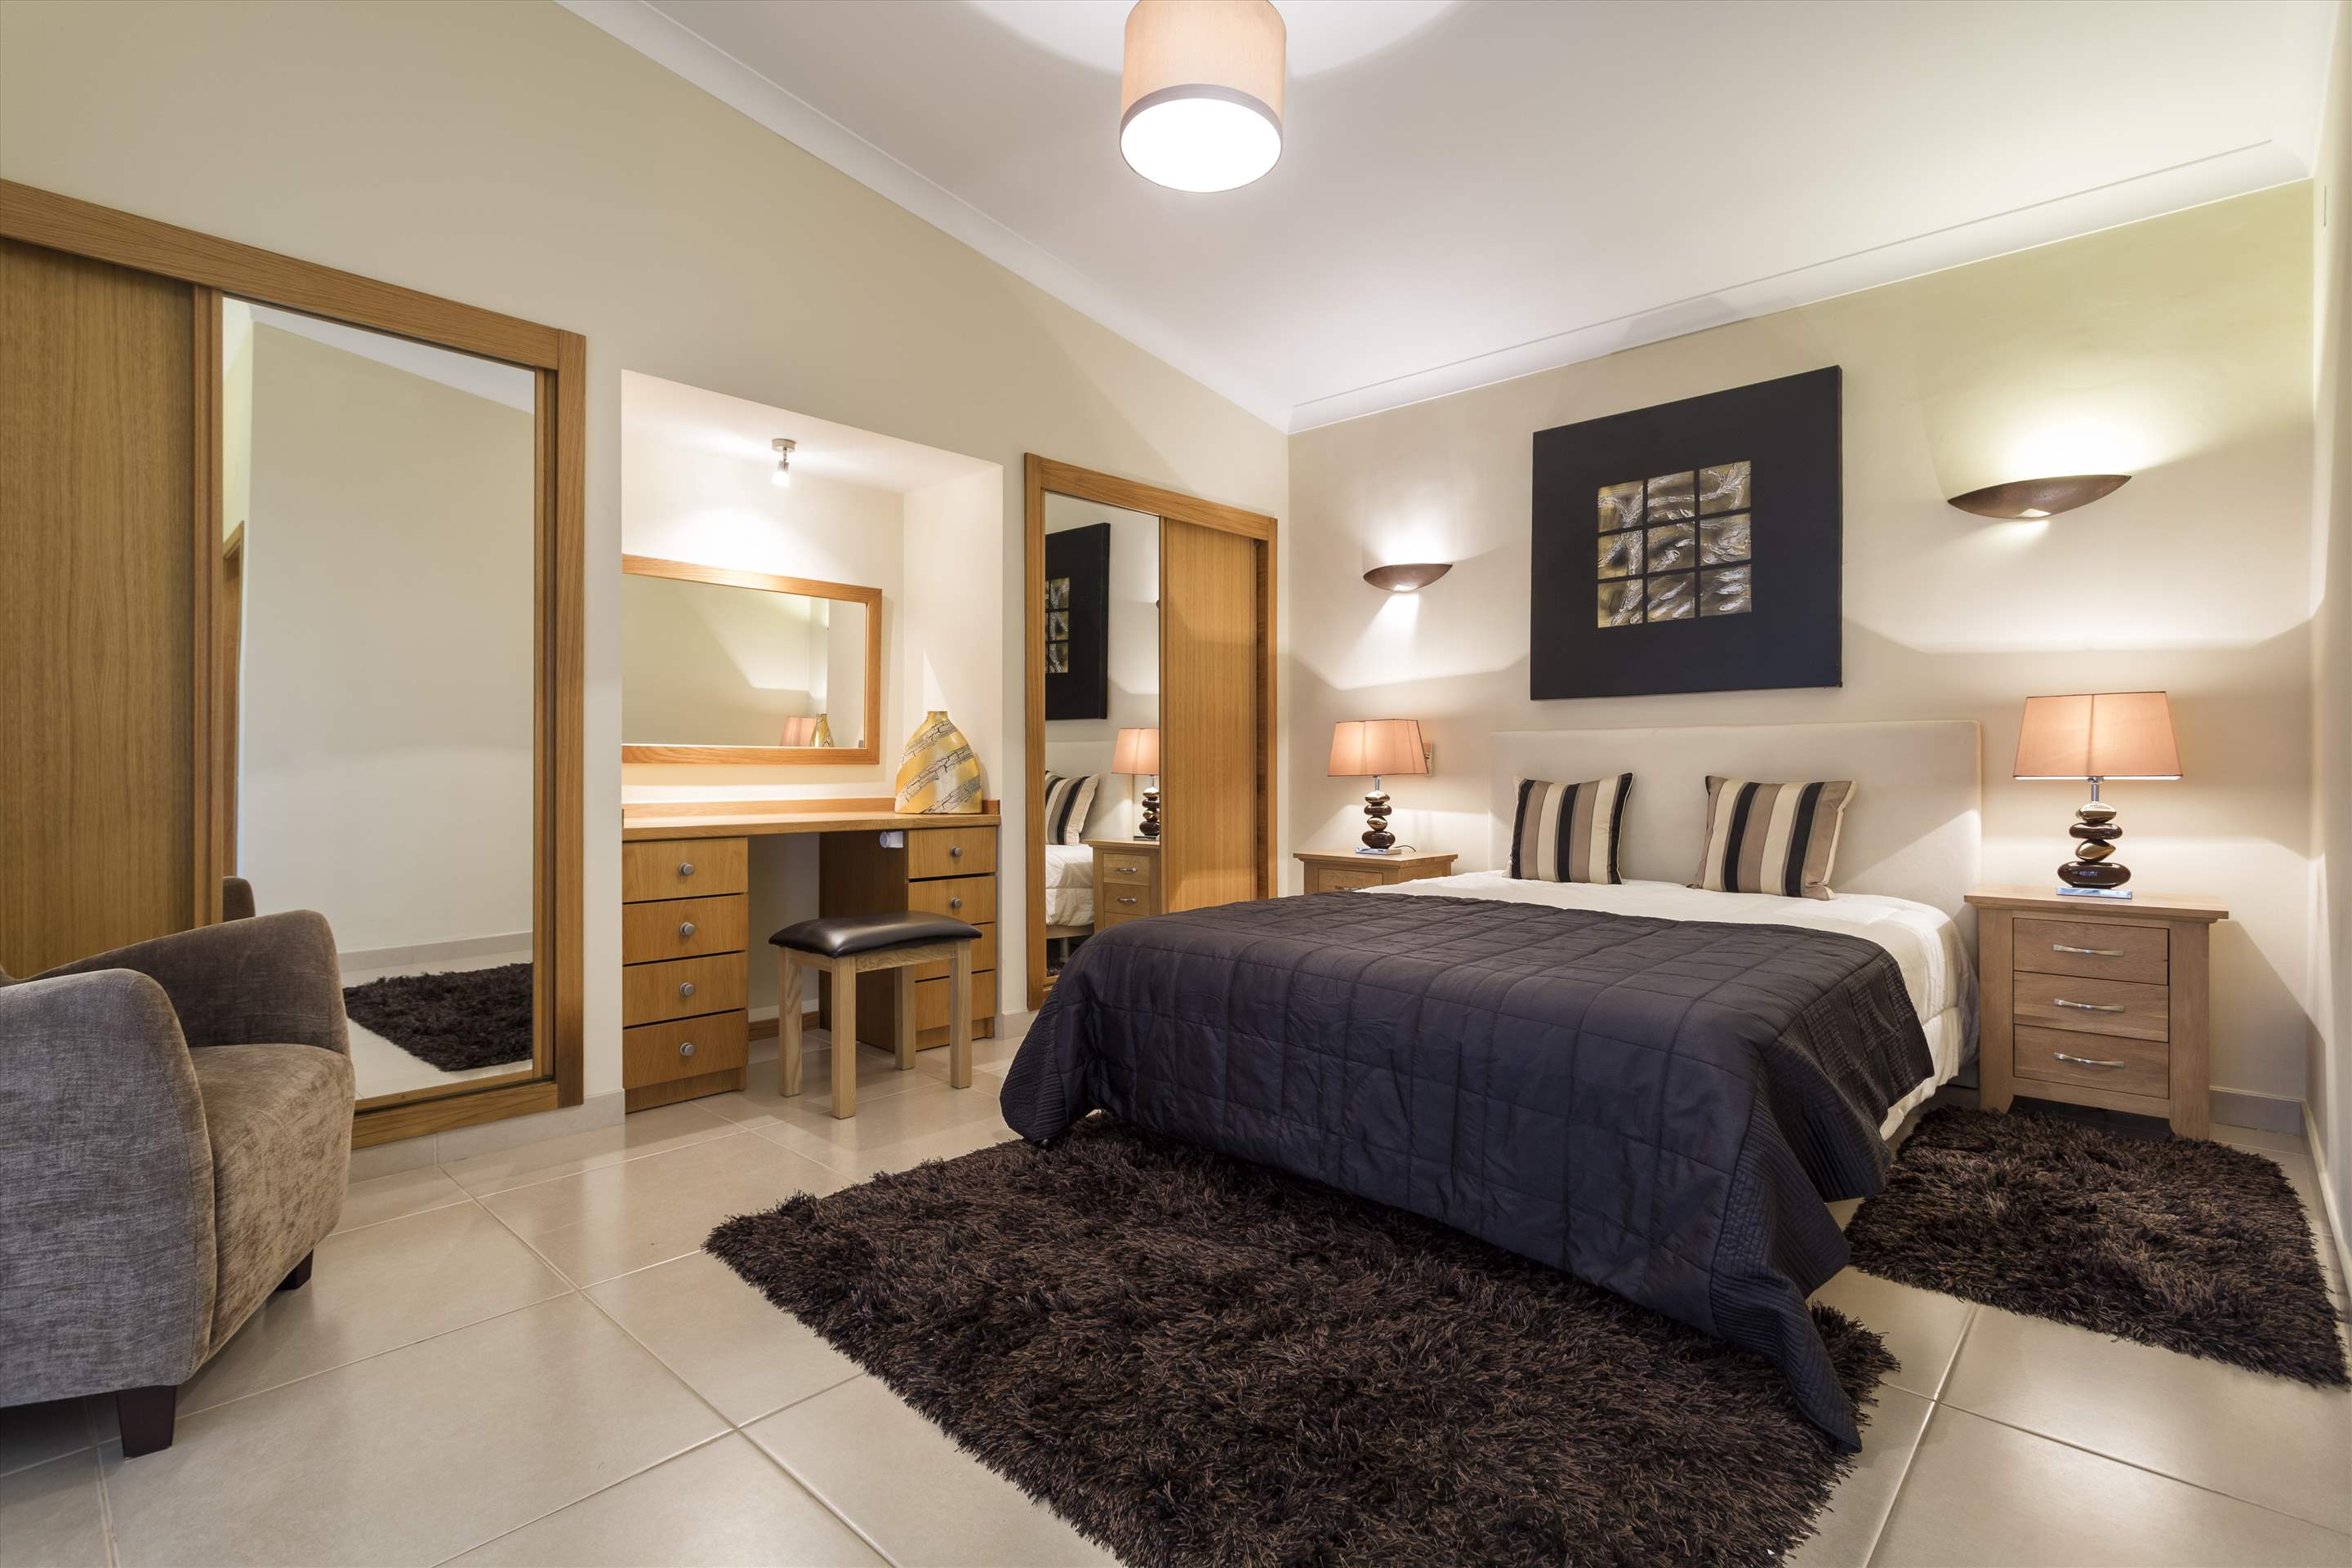 Casa Blanca, 3 Bed Rental, 3 bedroom villa in Vale do Lobo, Algarve Photo #9